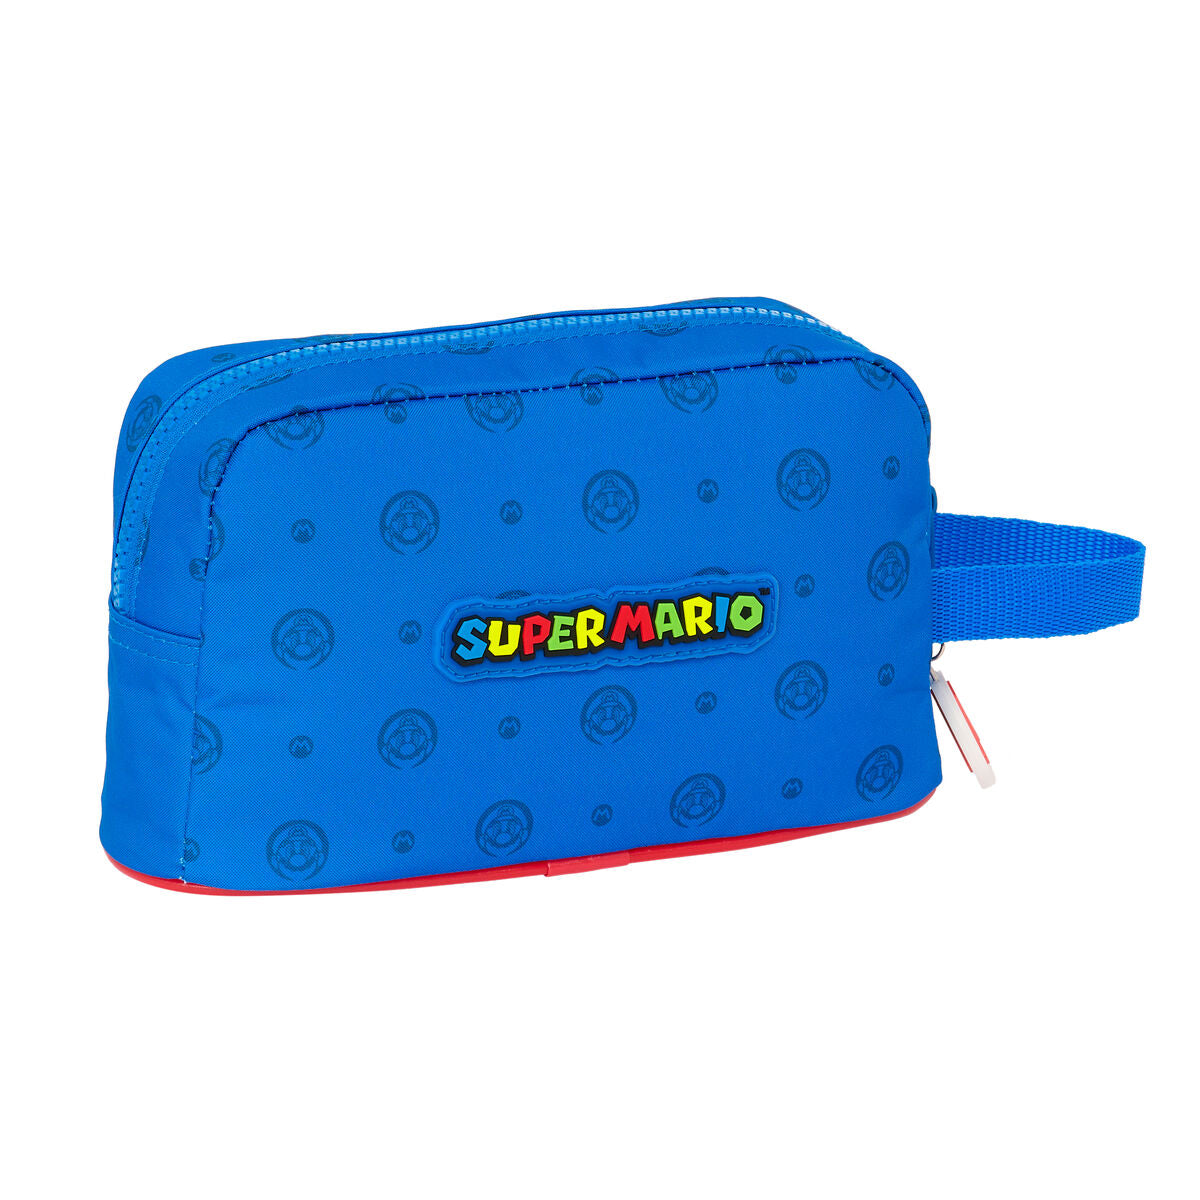 Porta-merendas Térmico Super Mario Play Azul Vermelho 21.5 x 12 x 6.5 cm